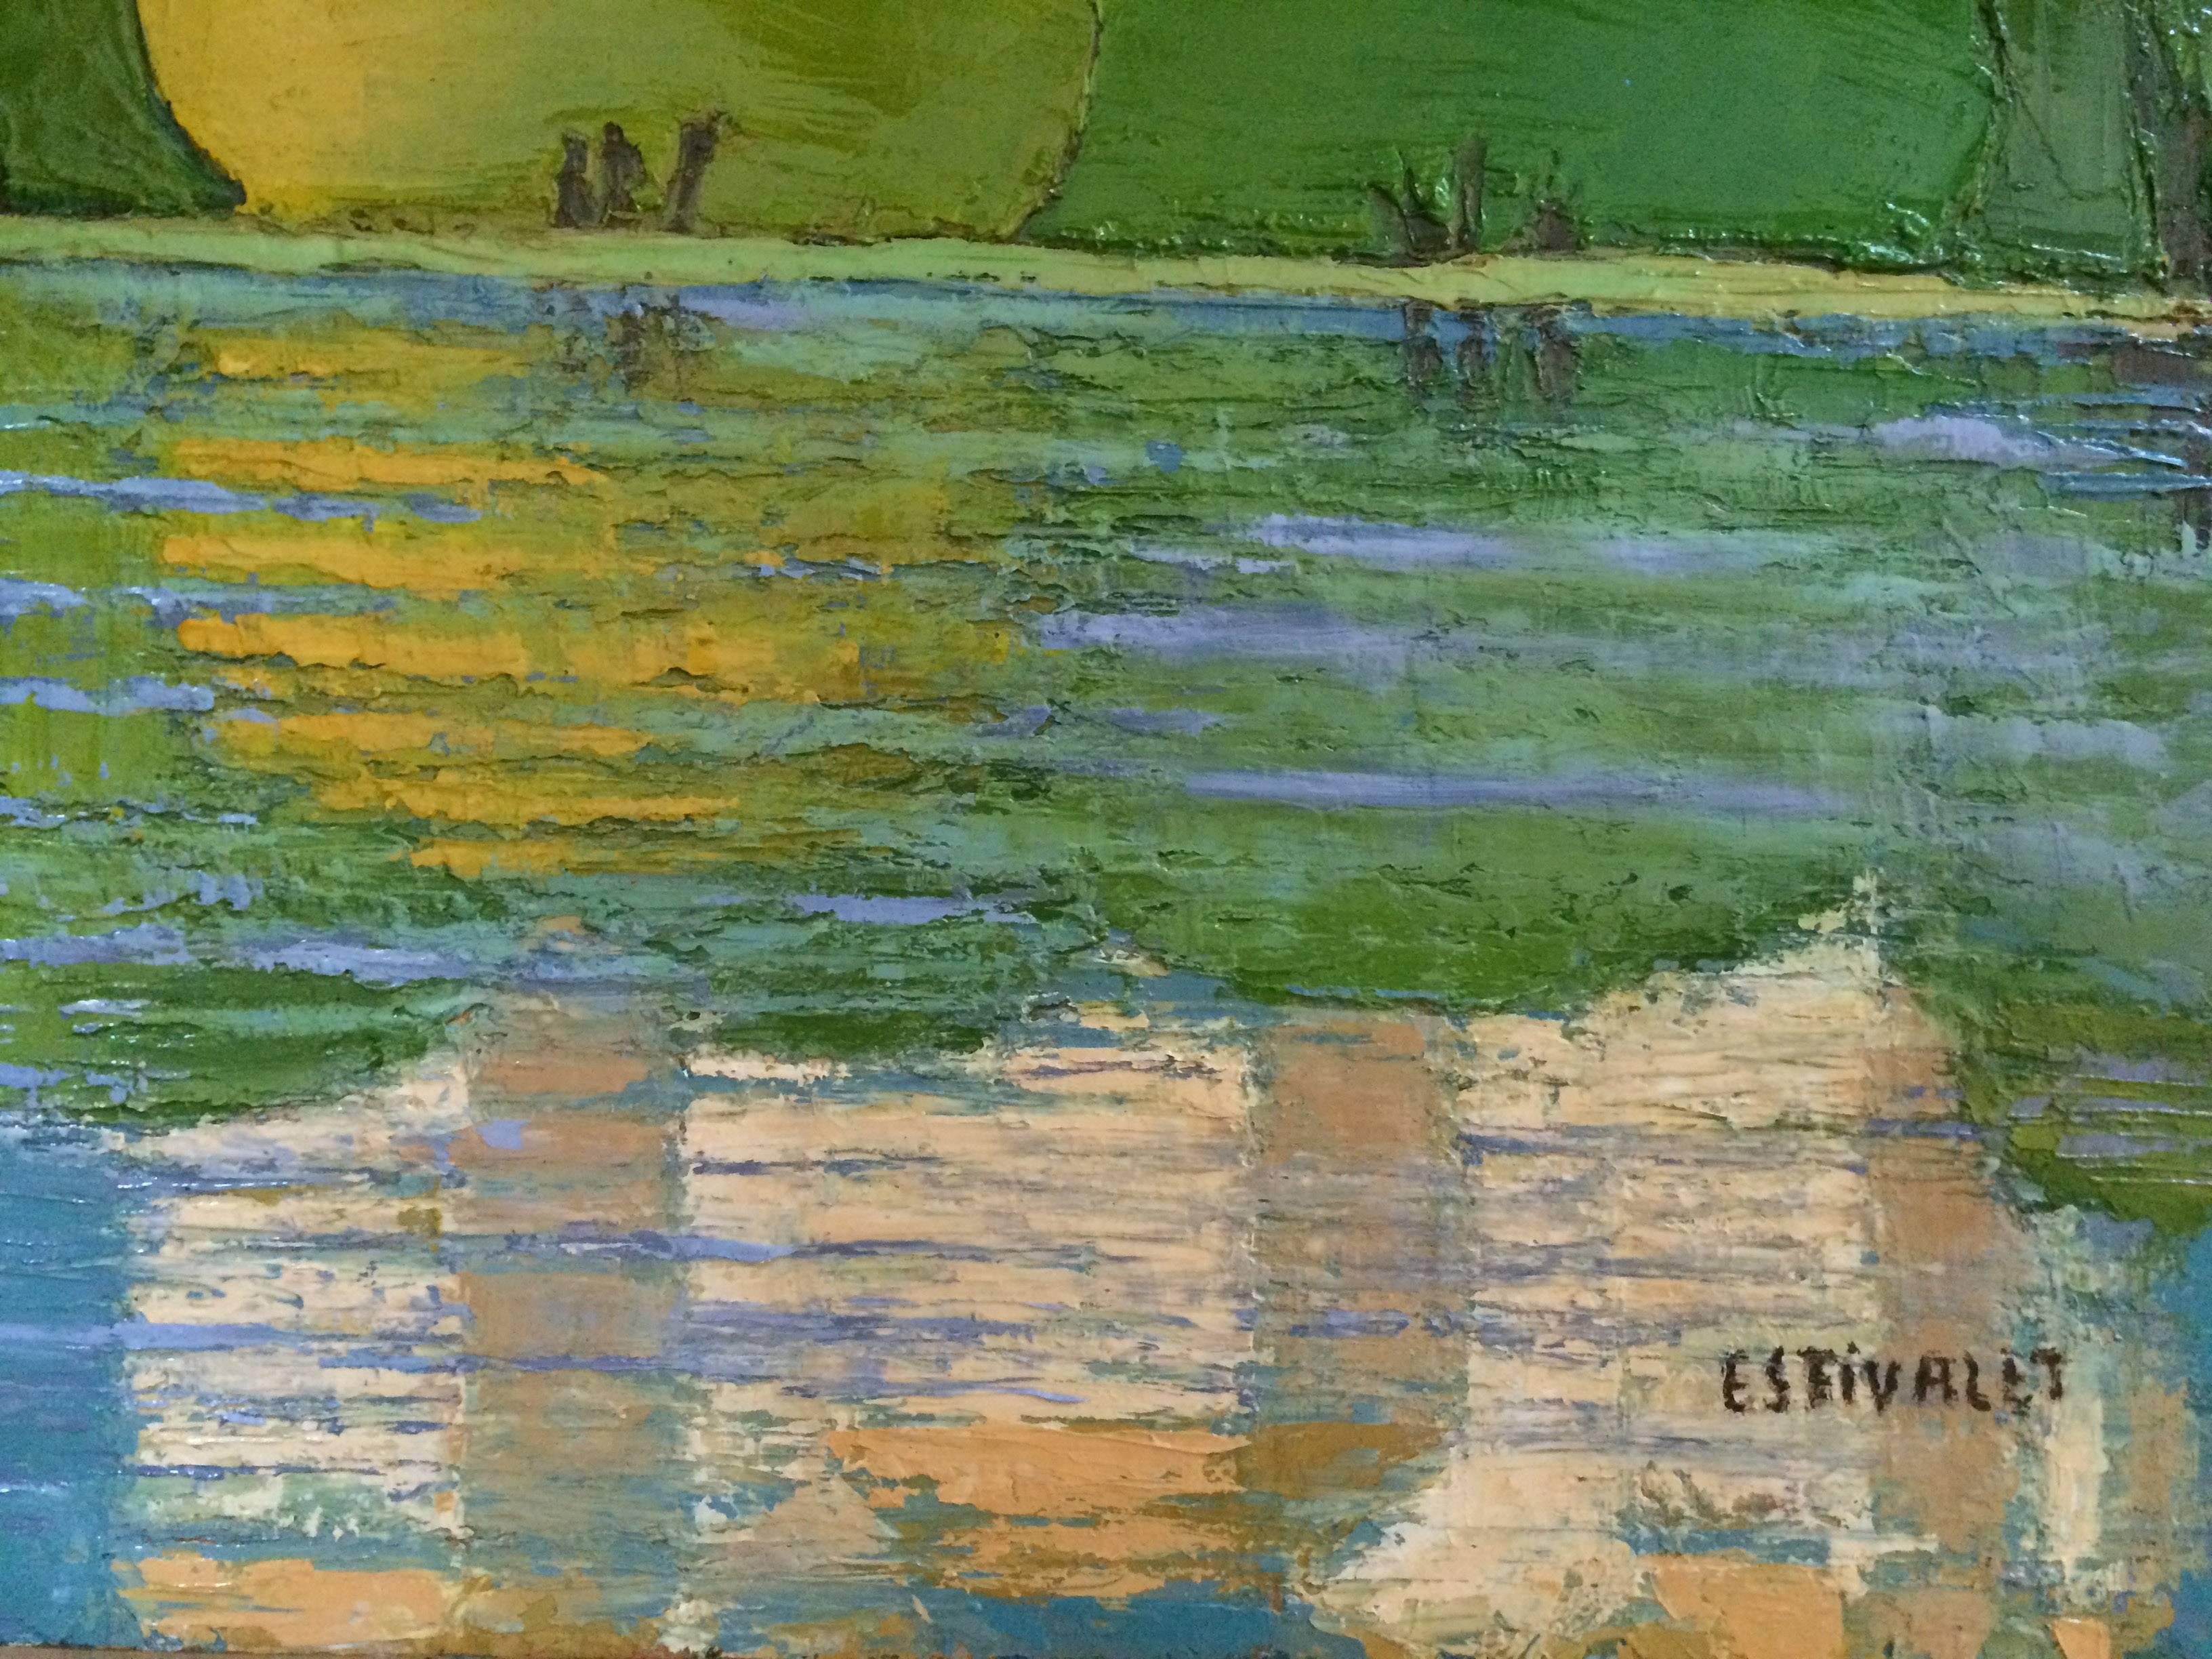 Lac D'Annacy - Painting by Elisabeth Estivalet